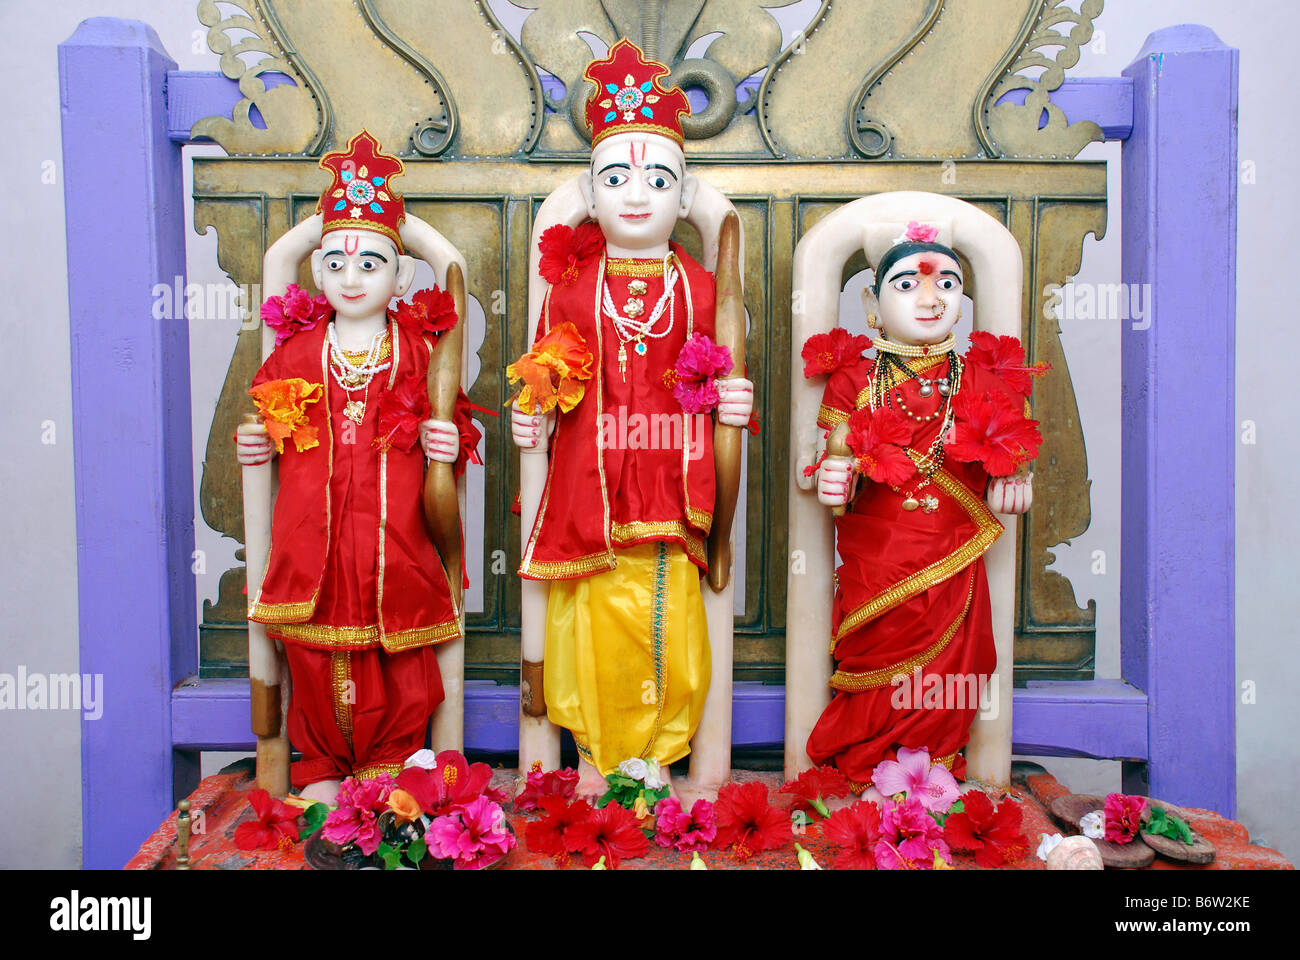 Marble Statue of Hindu Deity - God Rama, Godess Sita and Laxman at ...